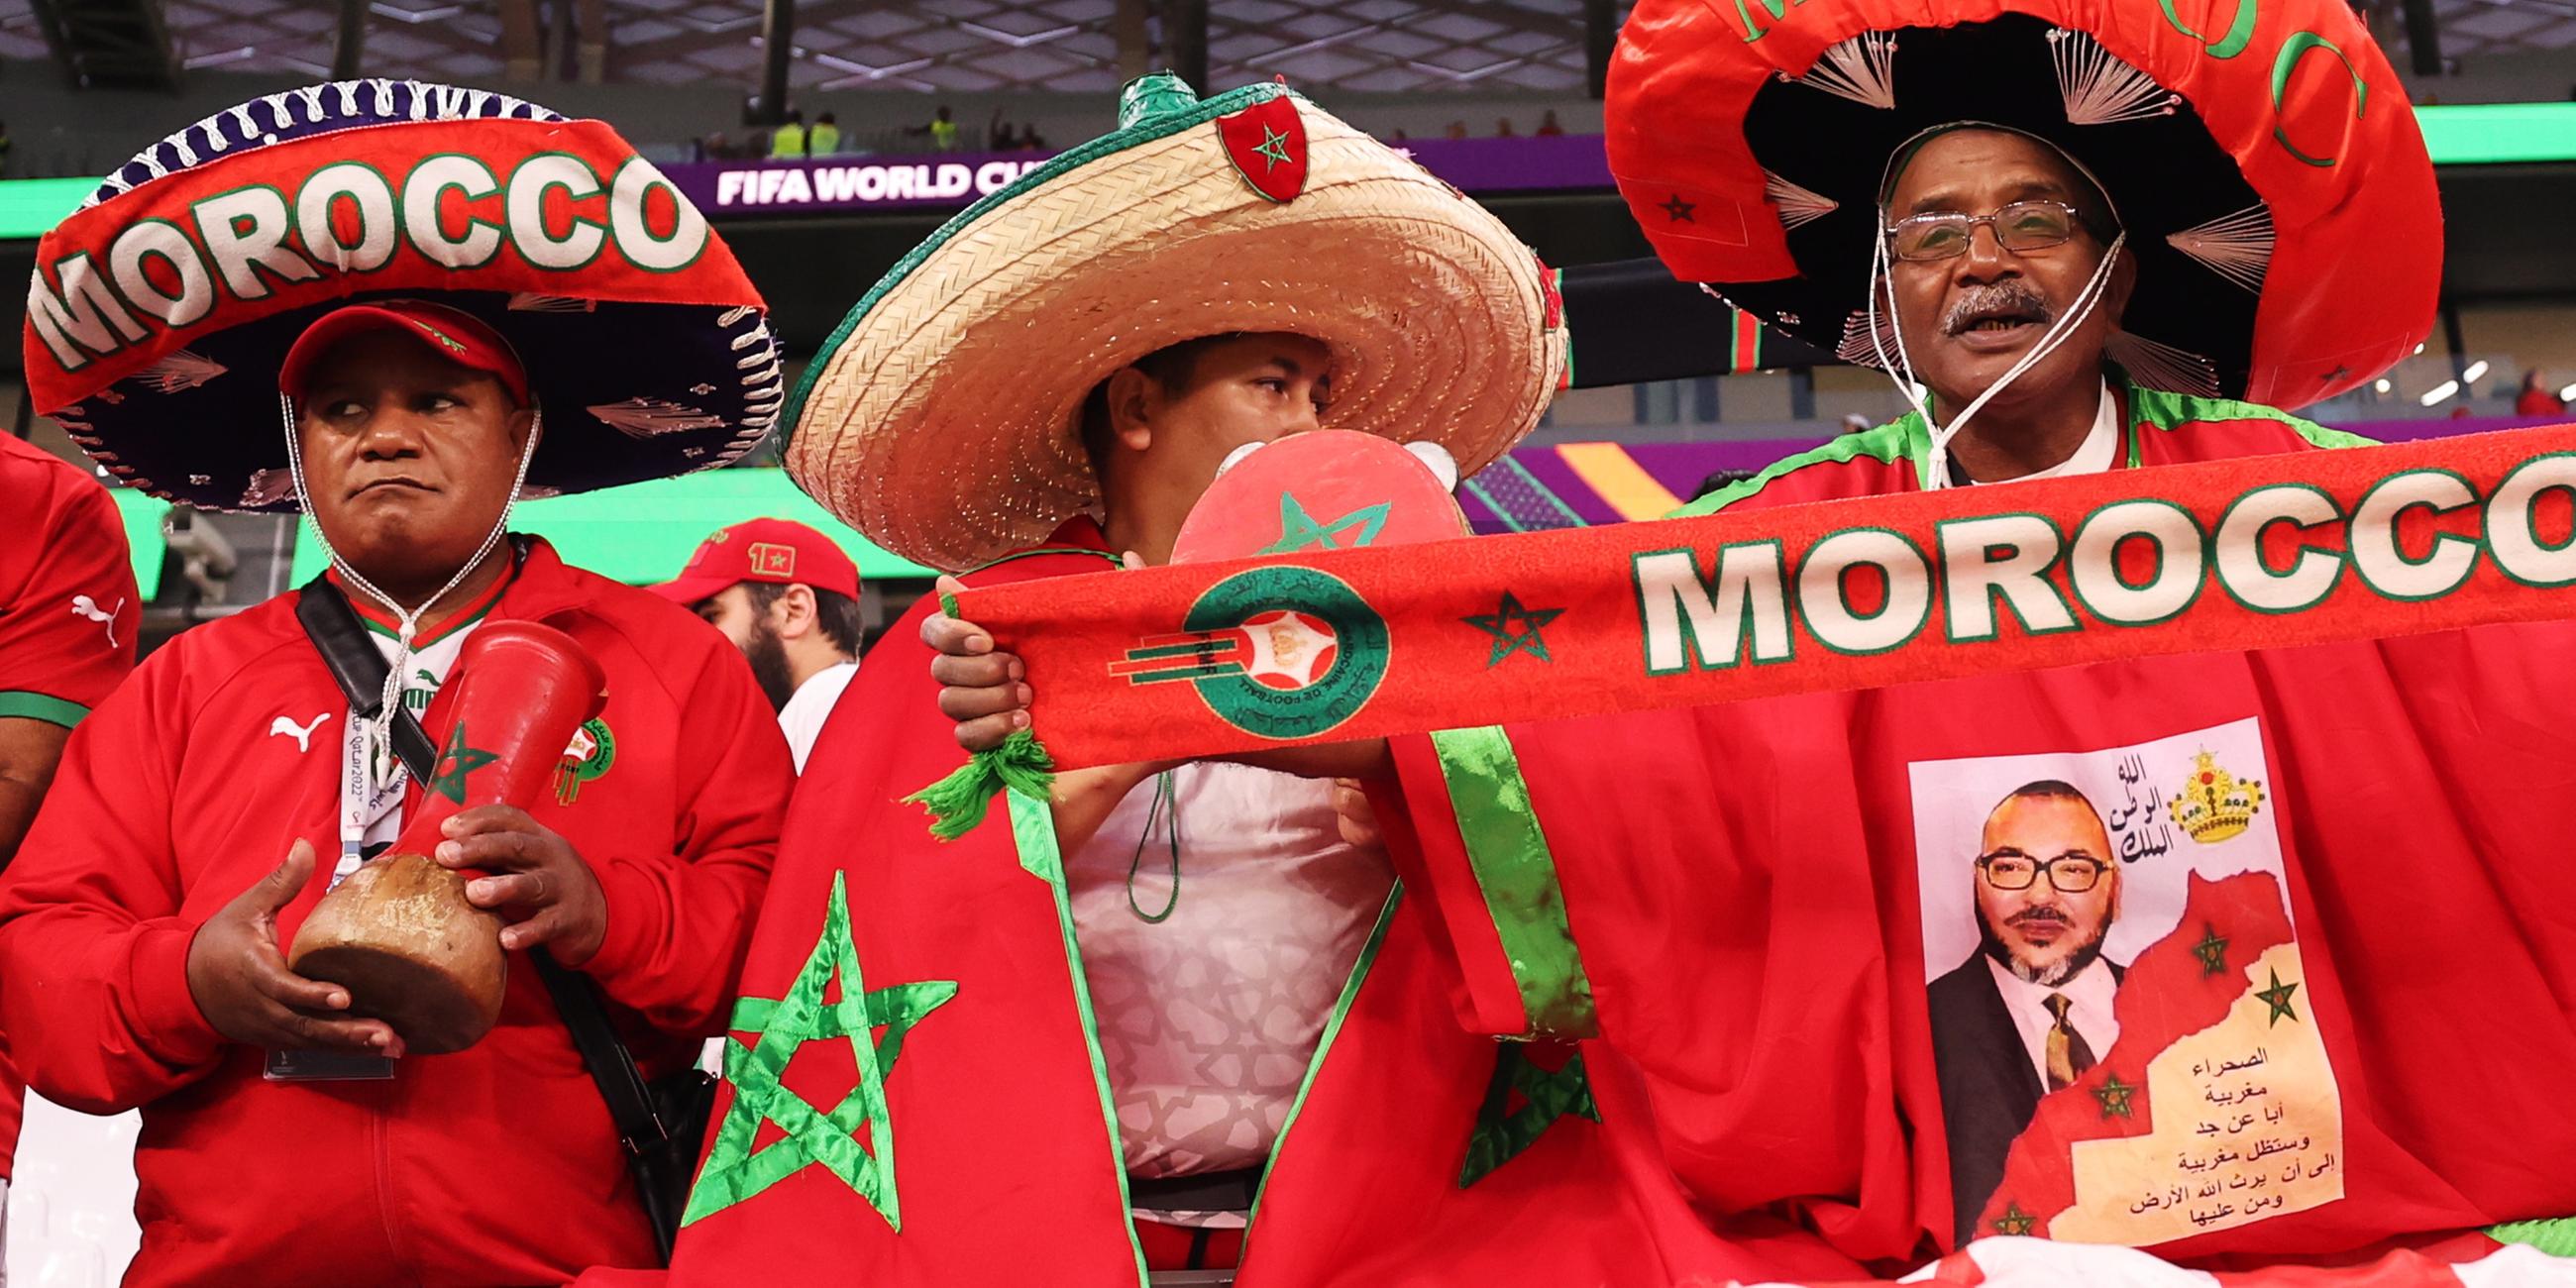 Marrokanische Fans während dem Achtelfinalspiel der Fußball-Weltmeisterschaft 2022 zwischen Marokko und Spanien. Ein Fan trägt ein Trikot mit dem Bild des marokkanischen Königs Mohammed VI..